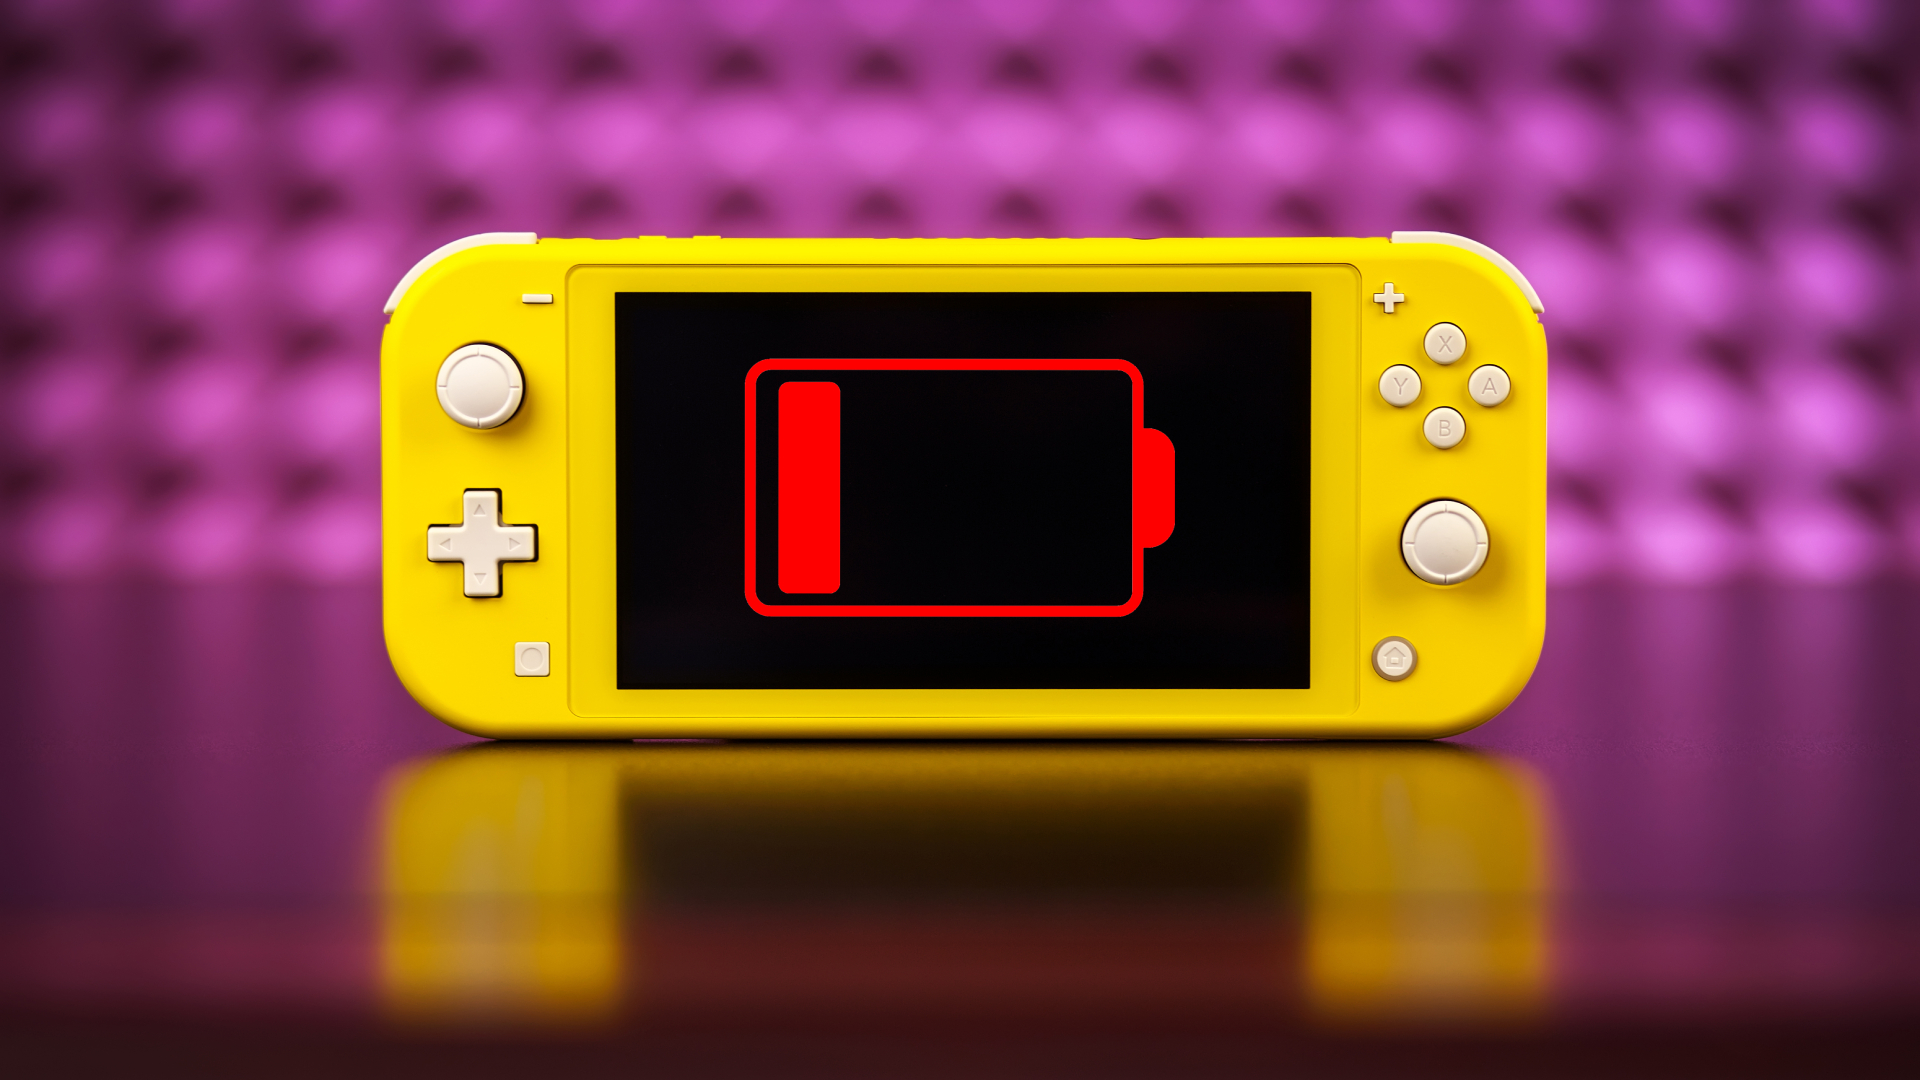 Máy Nintendo Switch Mod Chip - Tất Cả Những Thông Tin Bạn Cần Biết